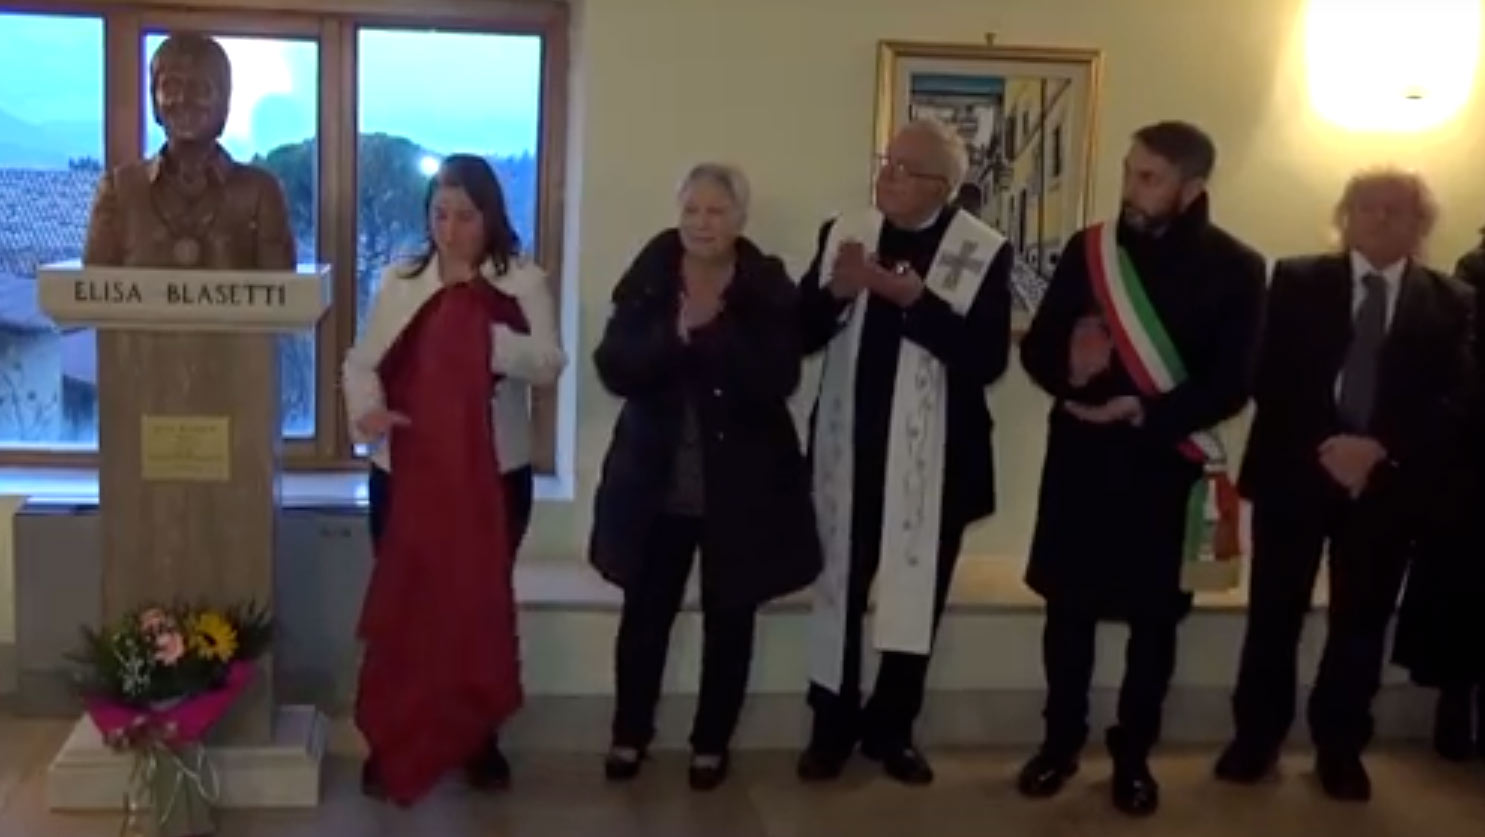 Elisa Blasetti “svelata” al Talia di Tagliacozzo, il coro Luigi Venturini ricorda la fondatrice nel ventennale della scomparsa